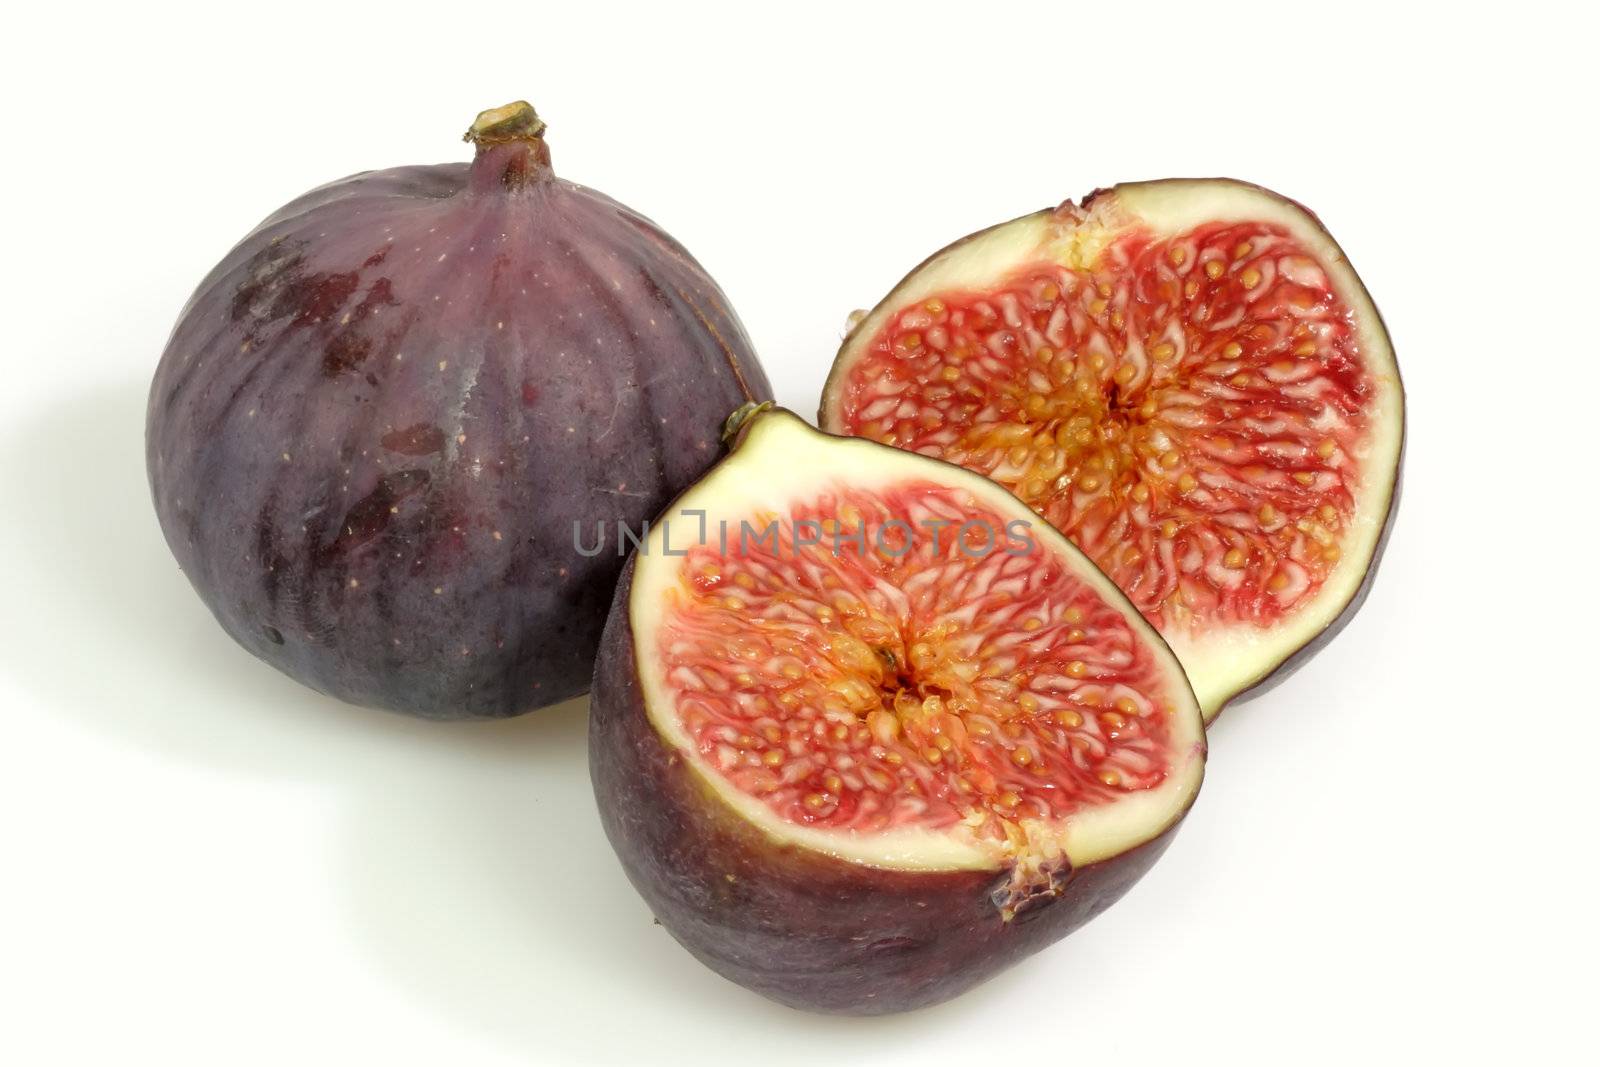 Tasty Figs by Teamarbeit